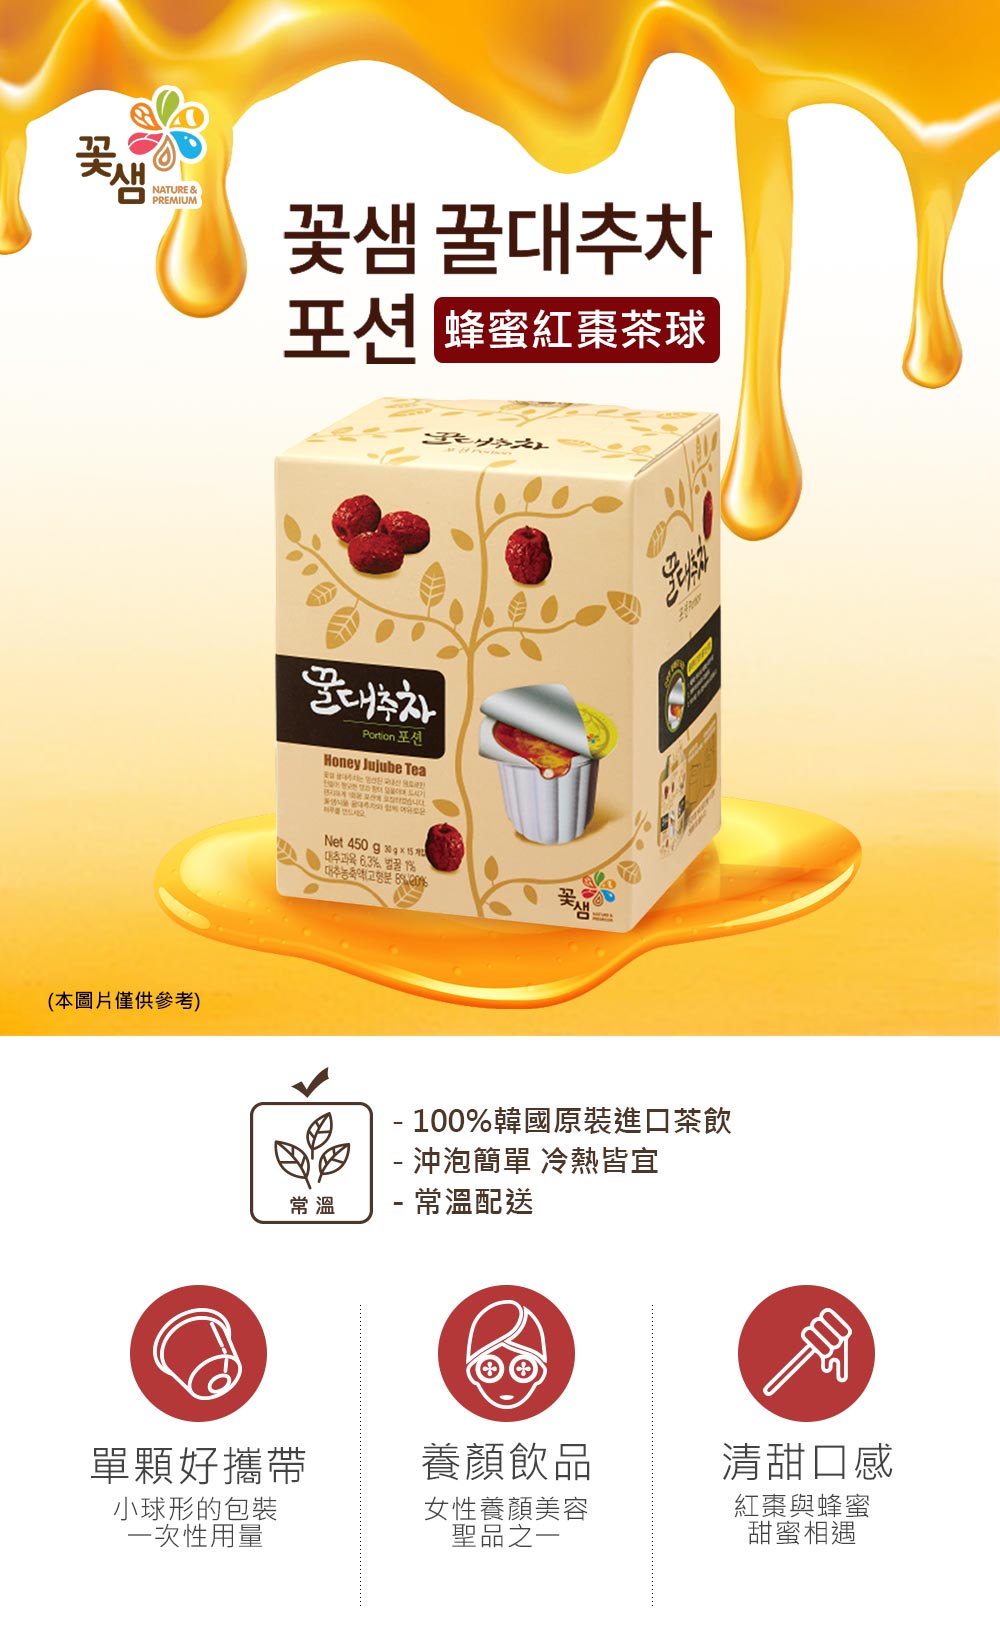 【韓味不二】花泉蜂蜜茶球(30g x15入/盒) 蜂蜜柚子茶球/蜂蜜紅棗茶球